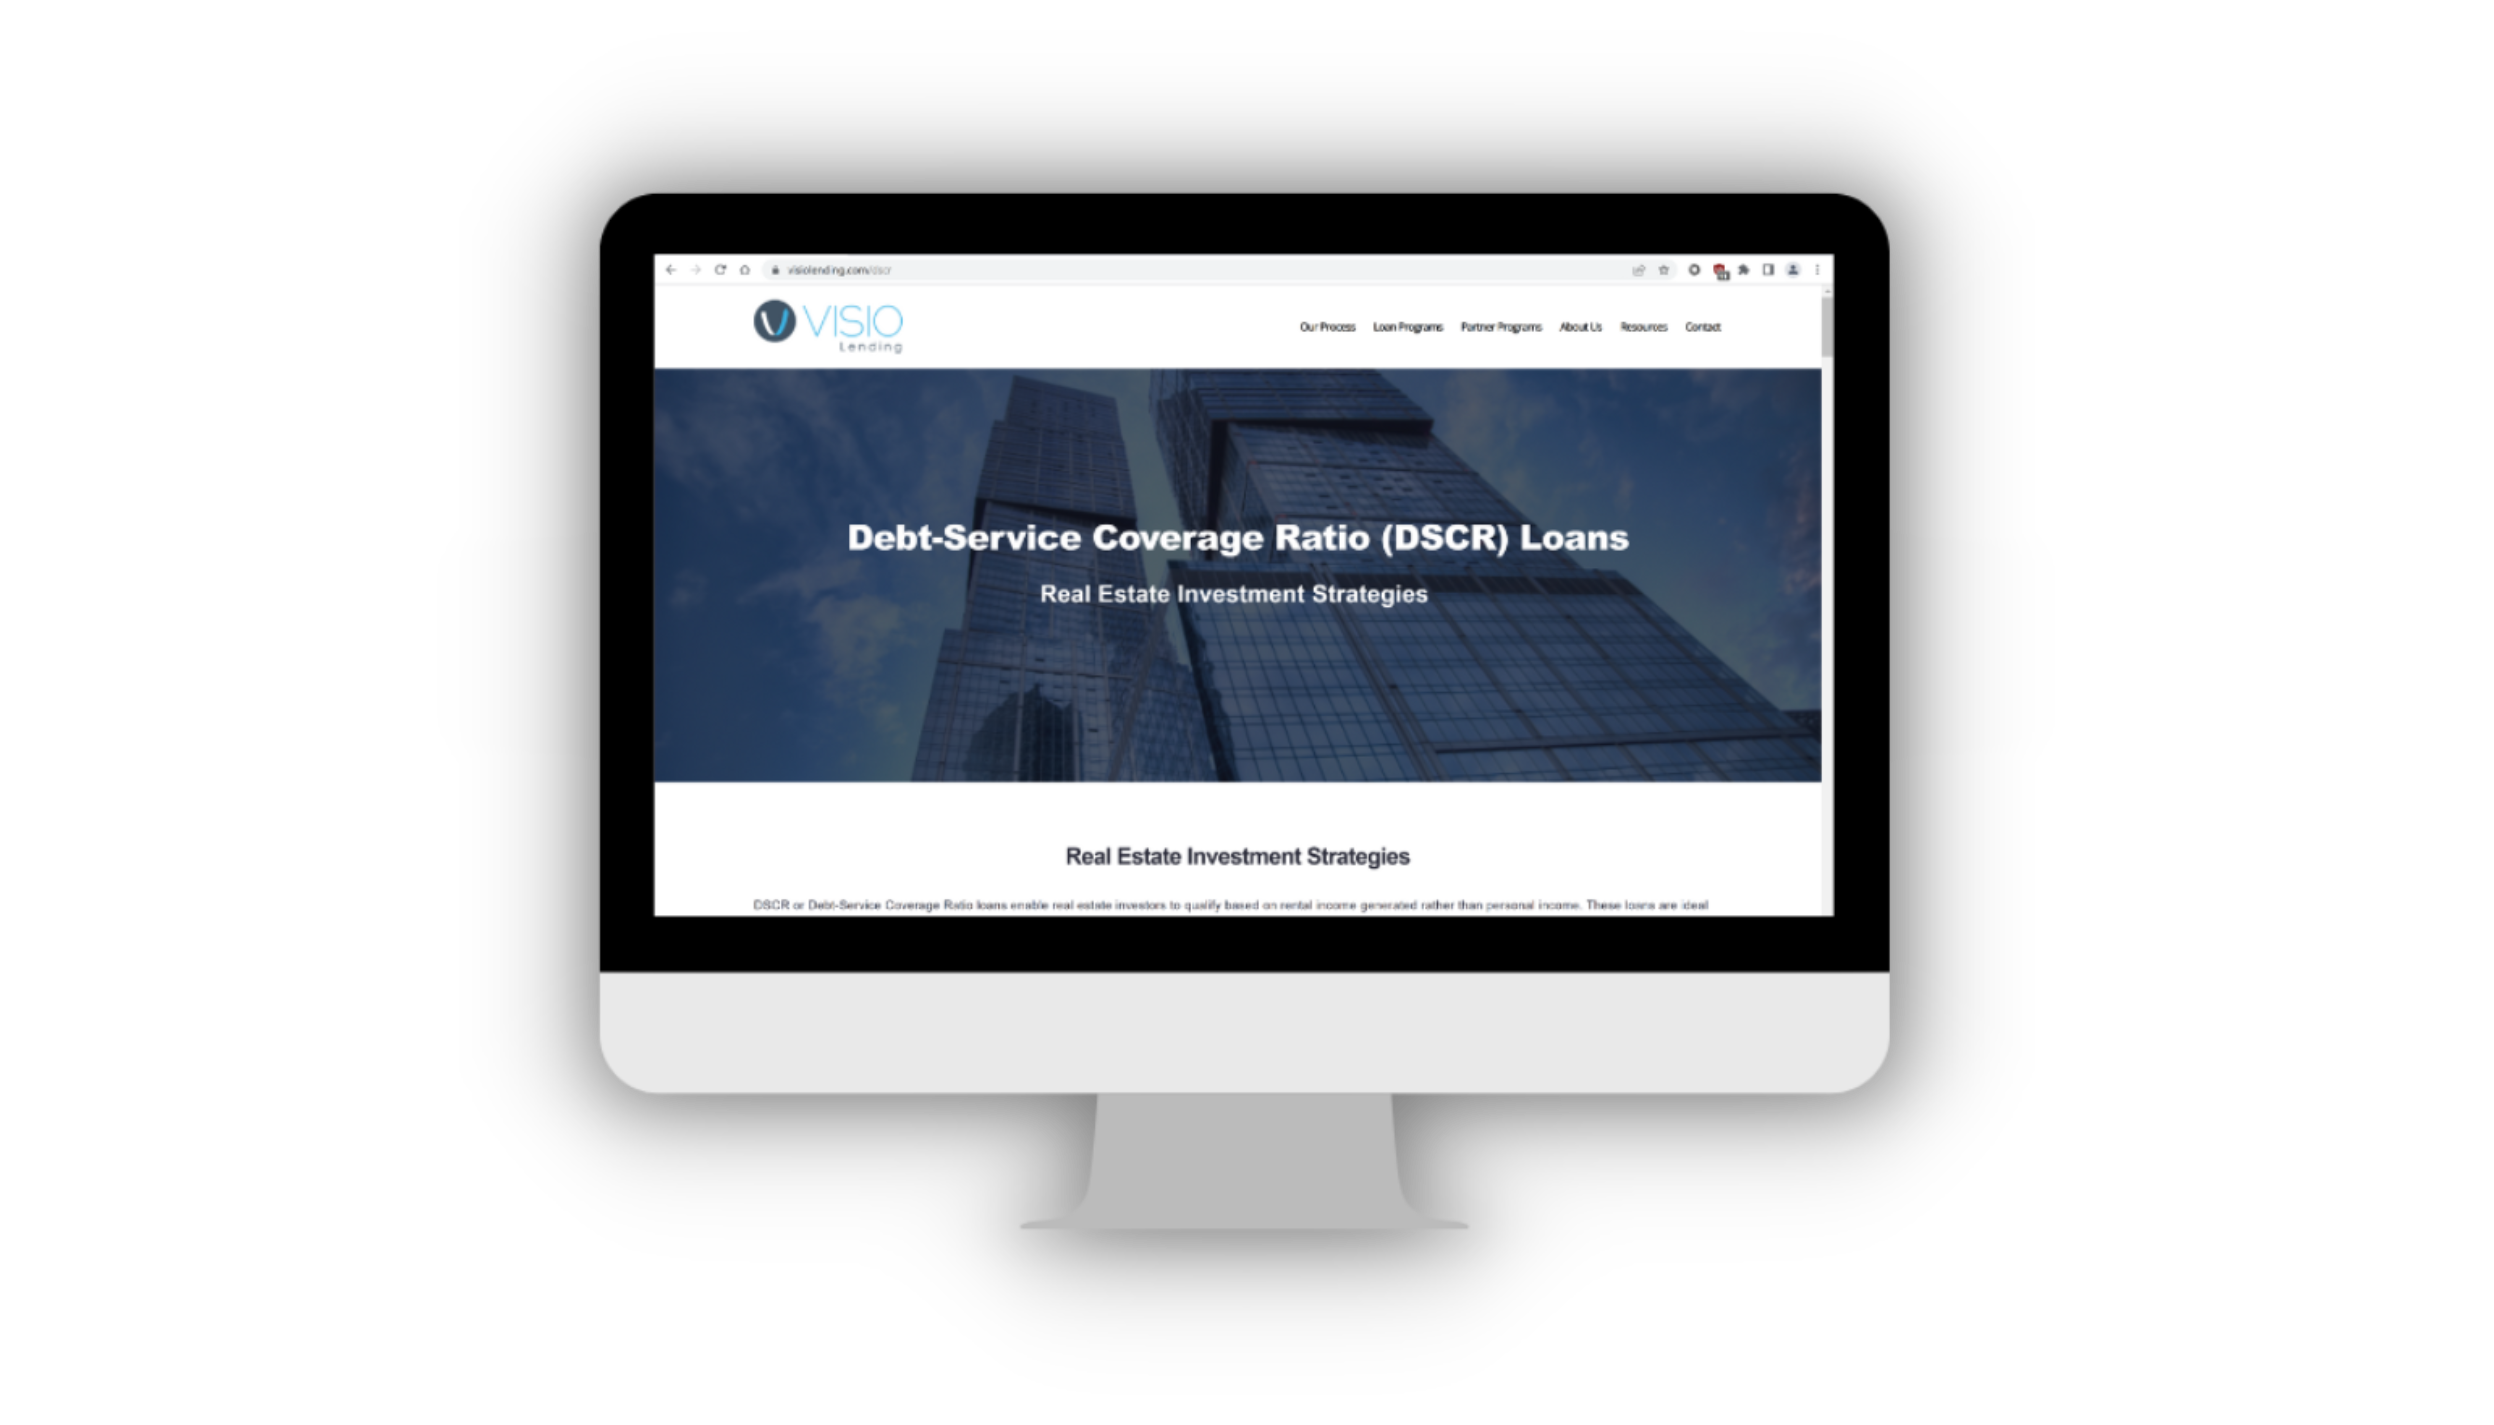 DSCR Loan Features